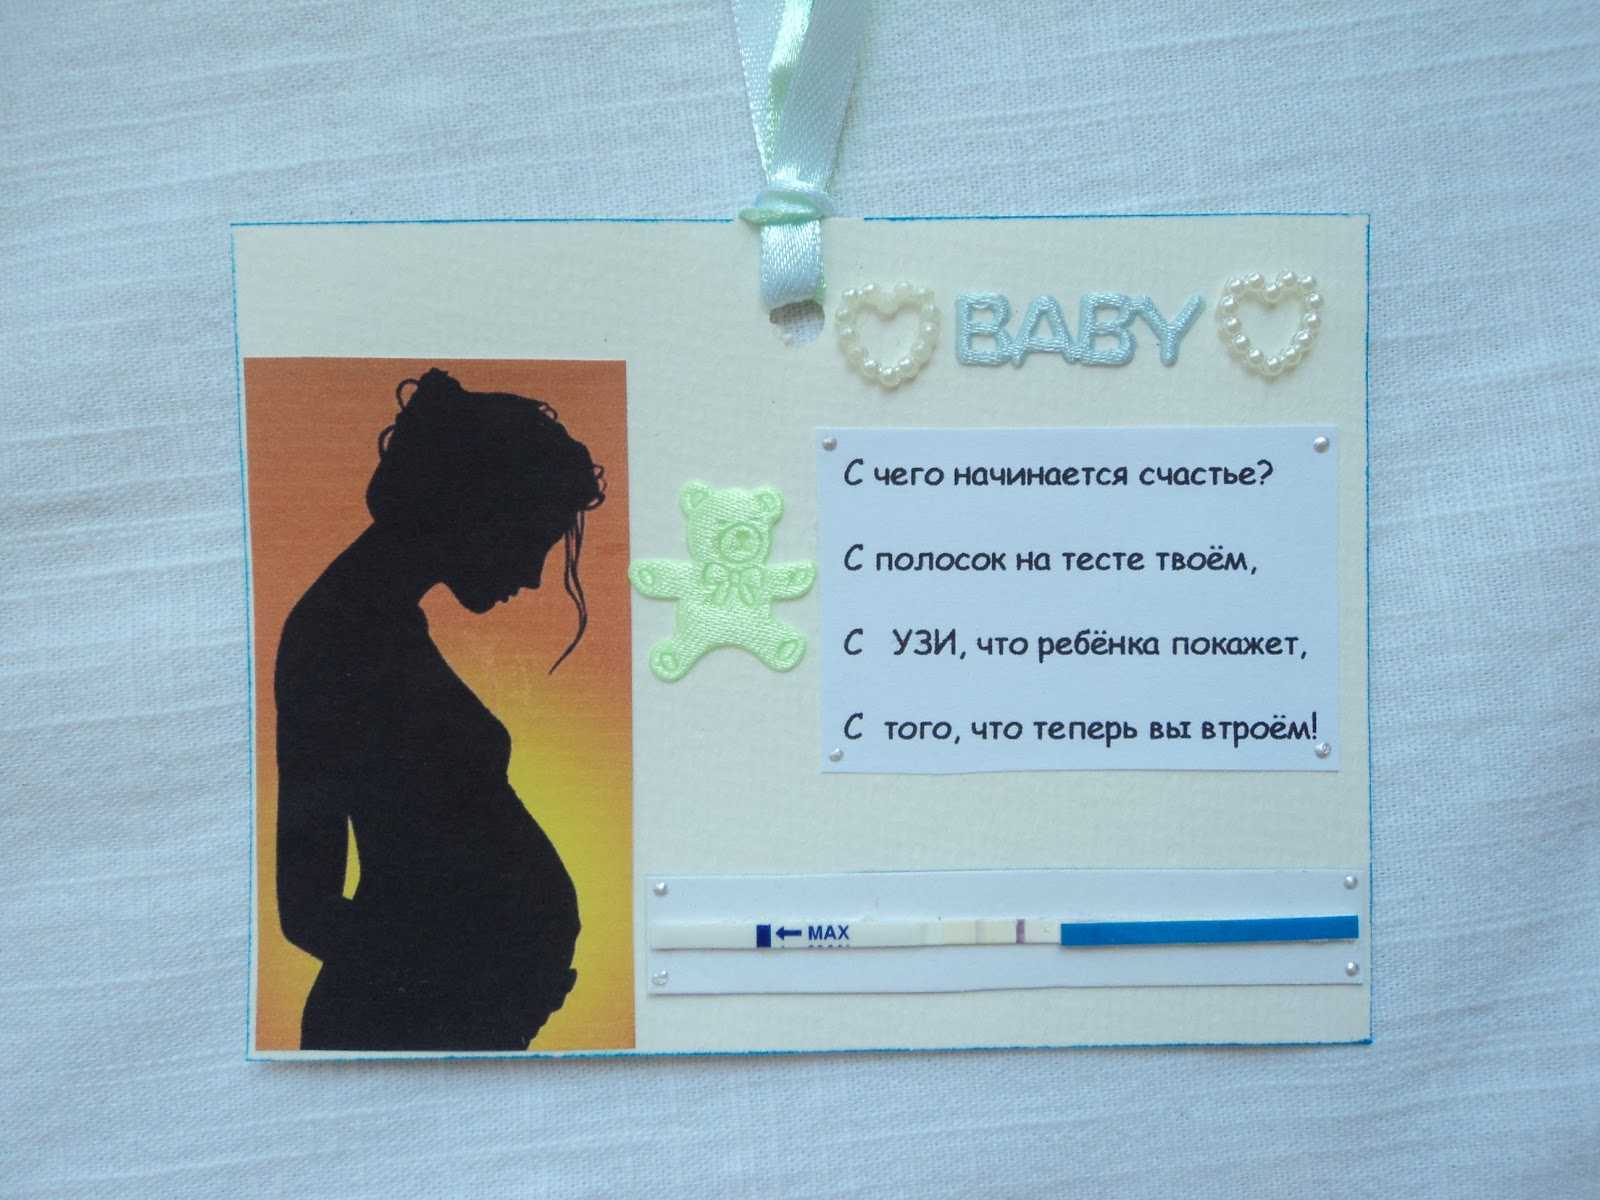 Сообщить о беременности